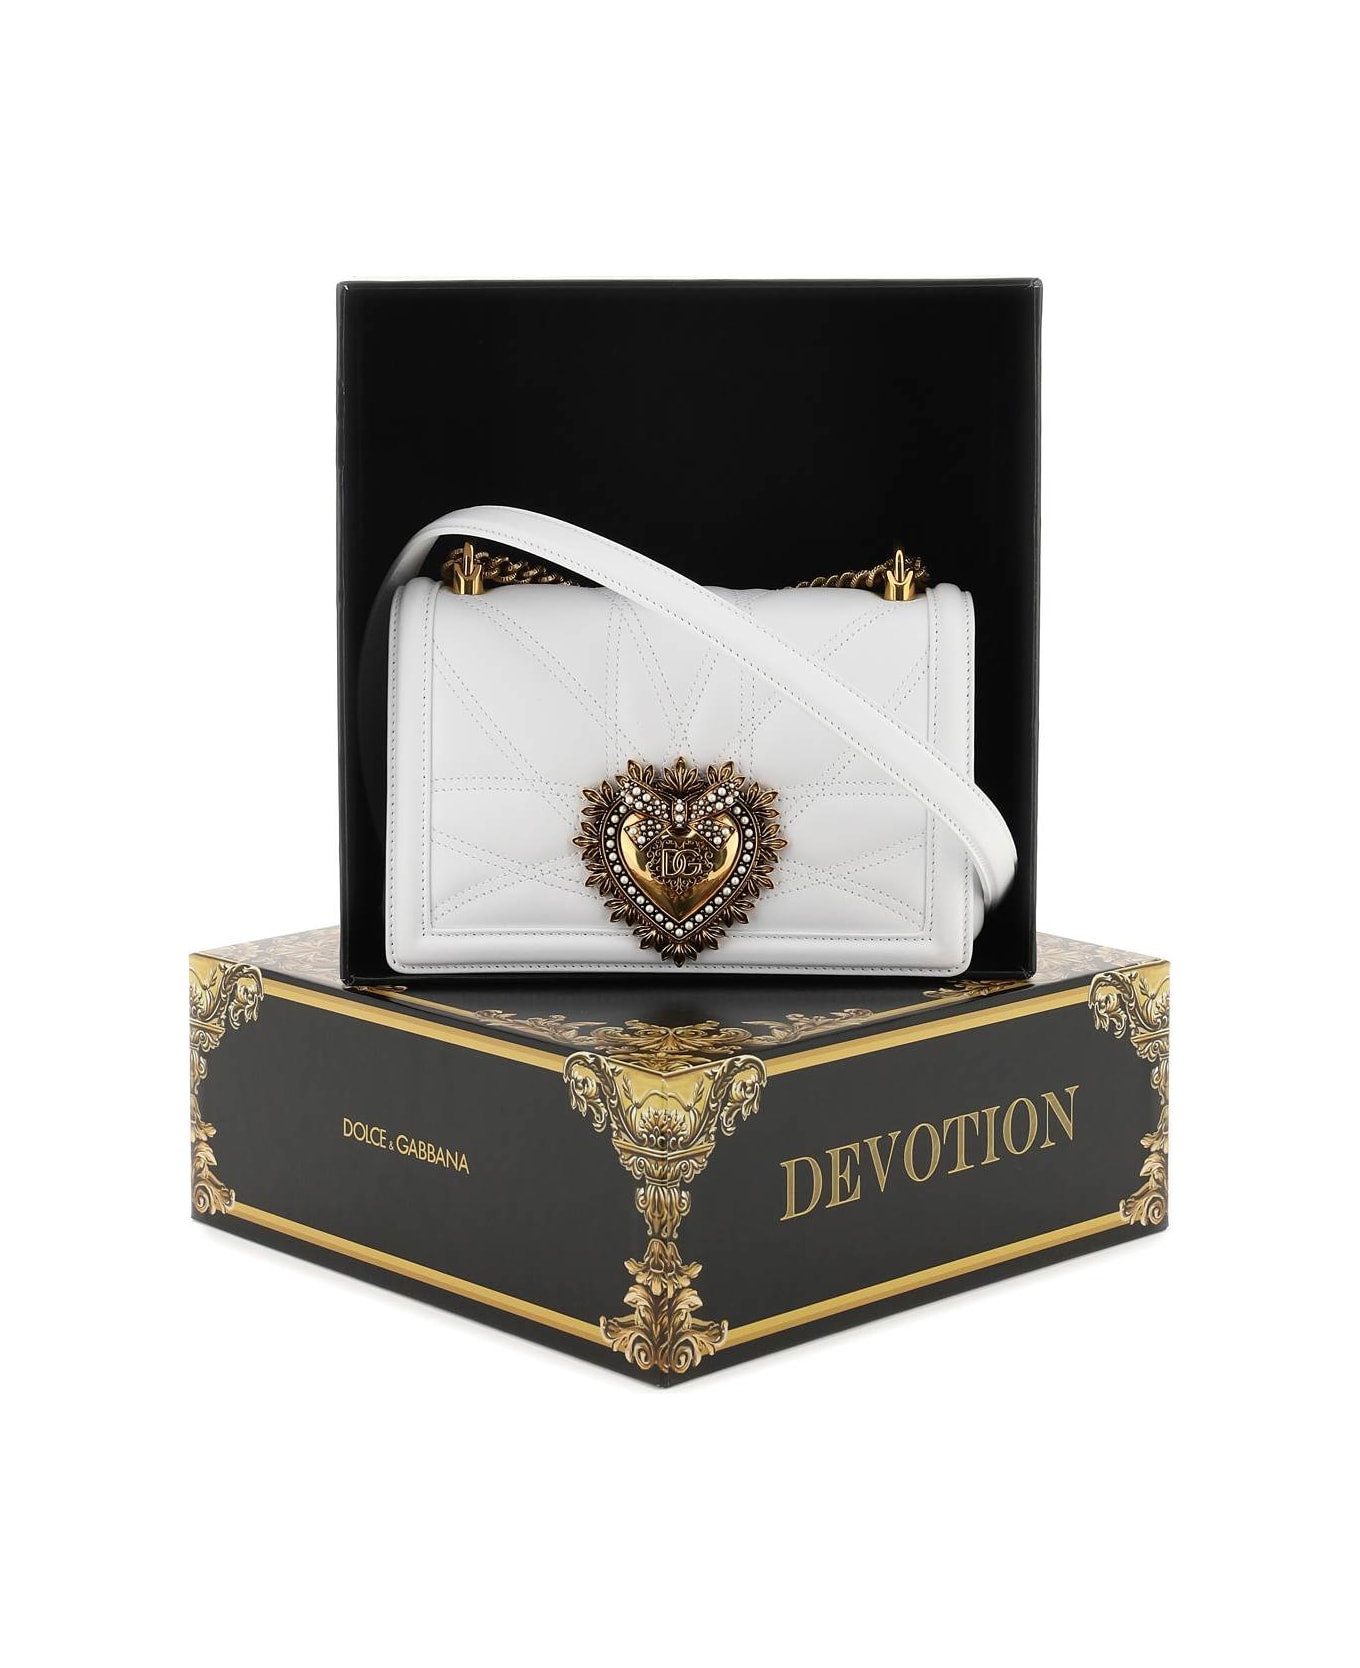 Dolce & Gabbana Devotion Bag - BIANCO OTTICO (White)